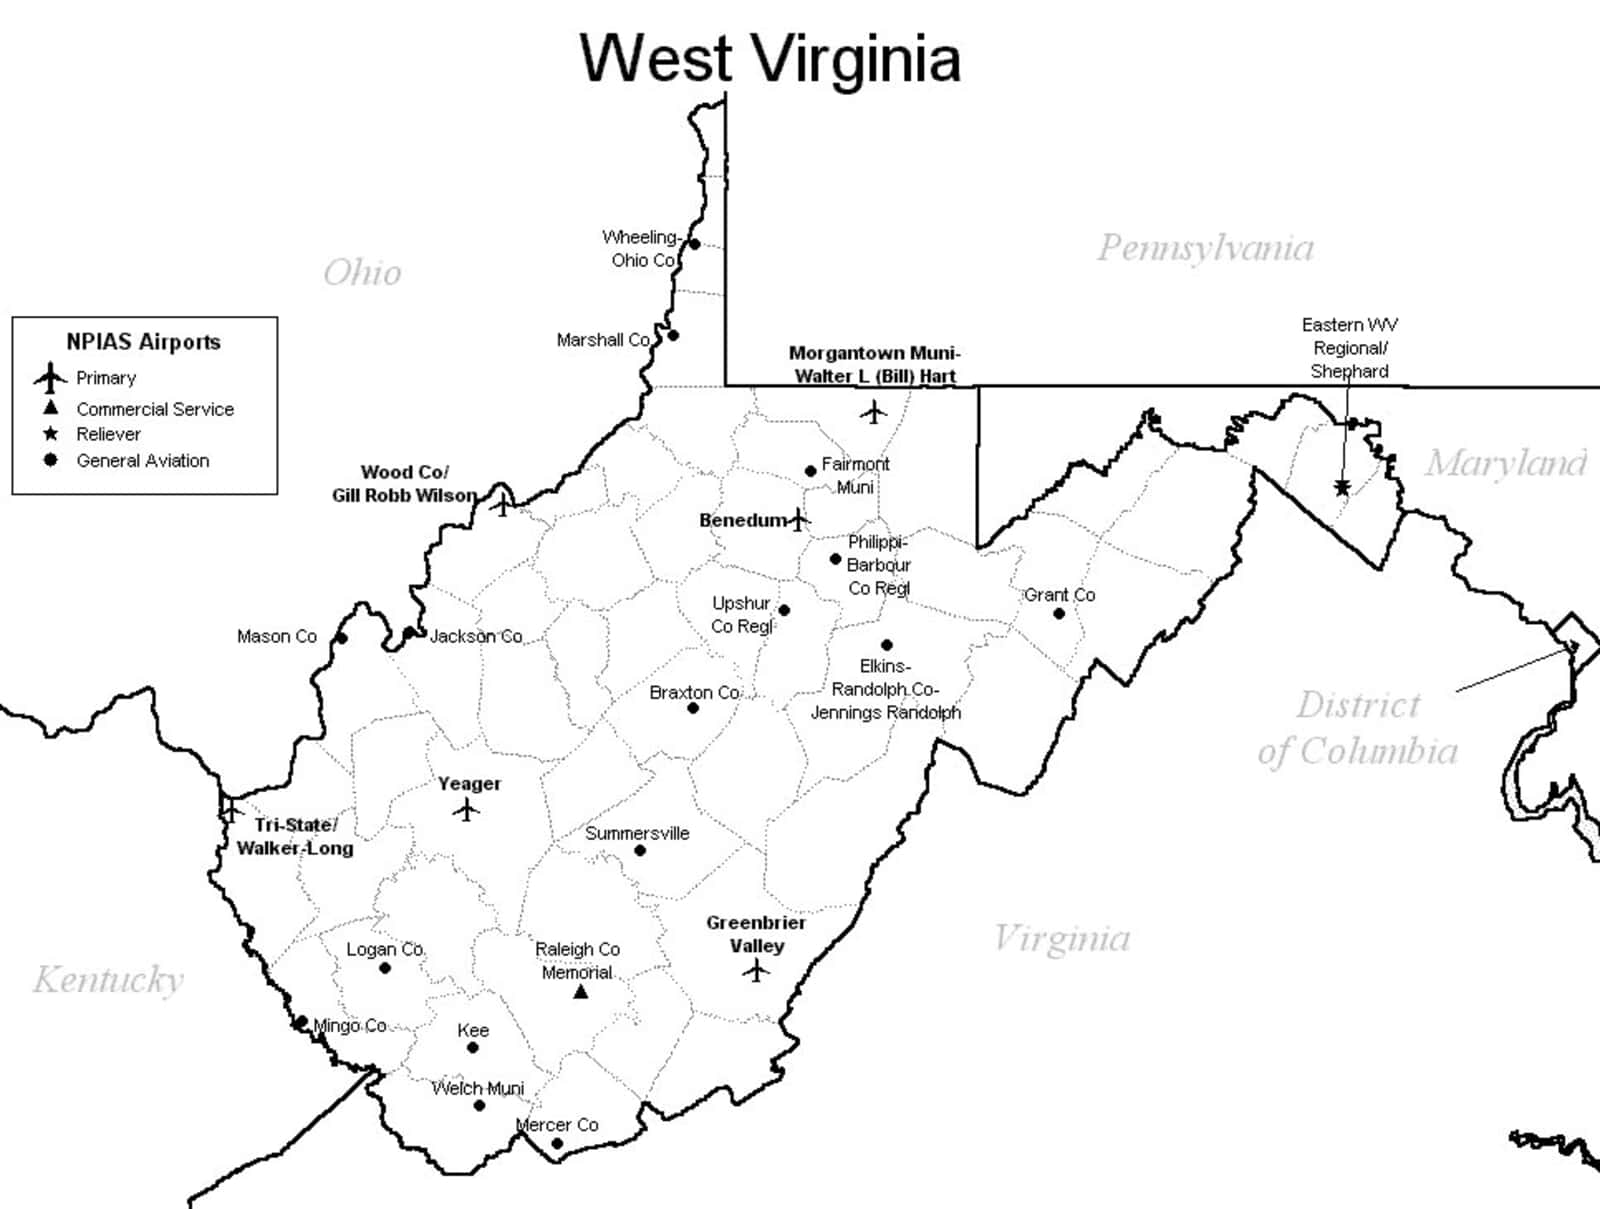 West Virginia Airport Map West Virginia Airports